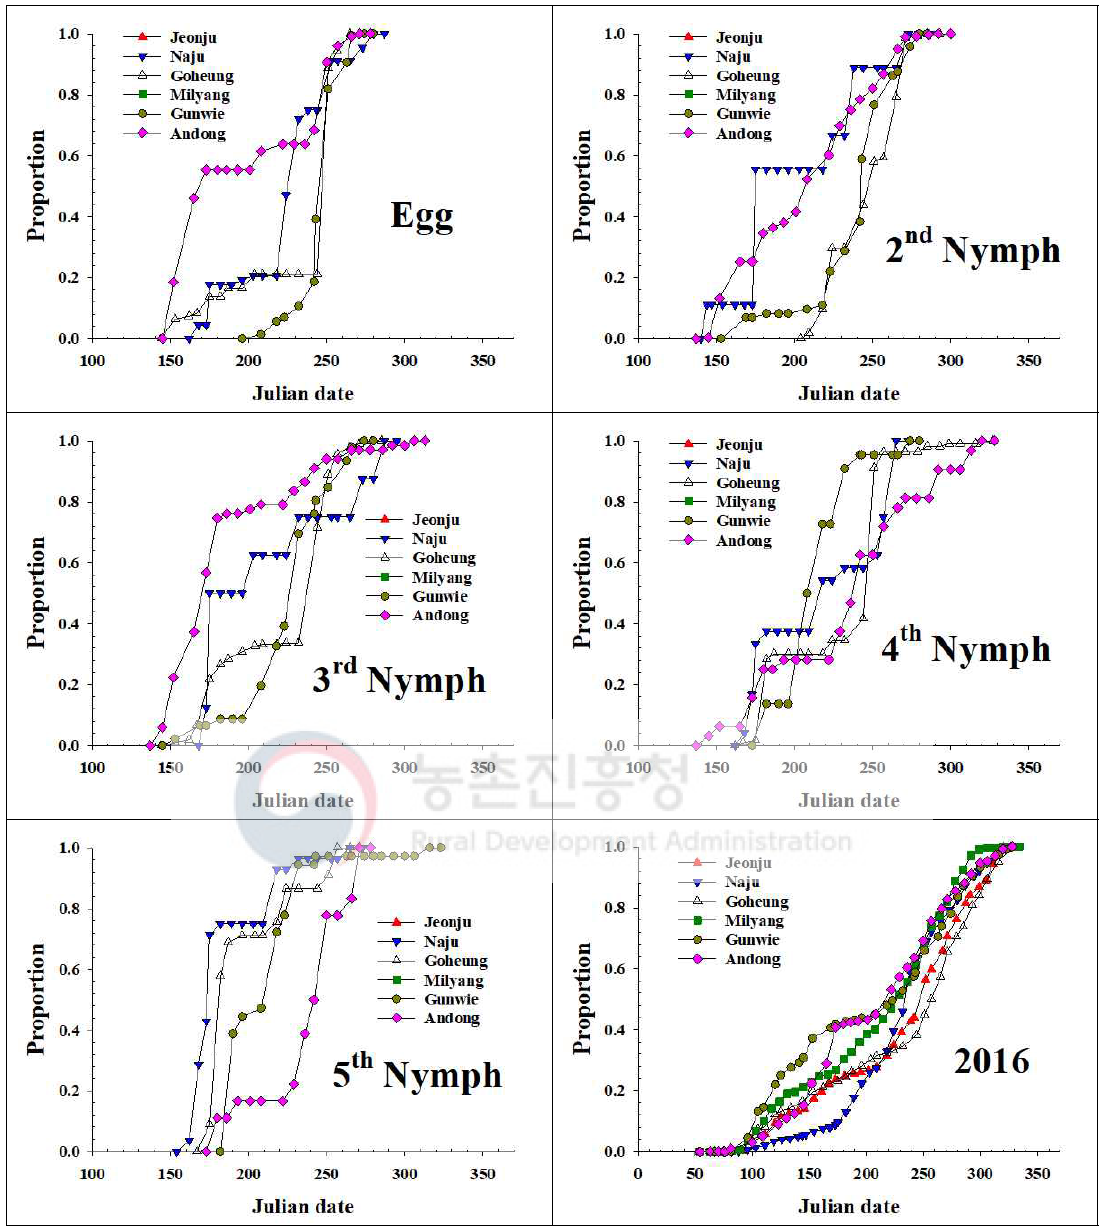 내륙지역 톱다리개미허리노린재 발육단계별 개체수 누적증가 지역간 비교(2016)